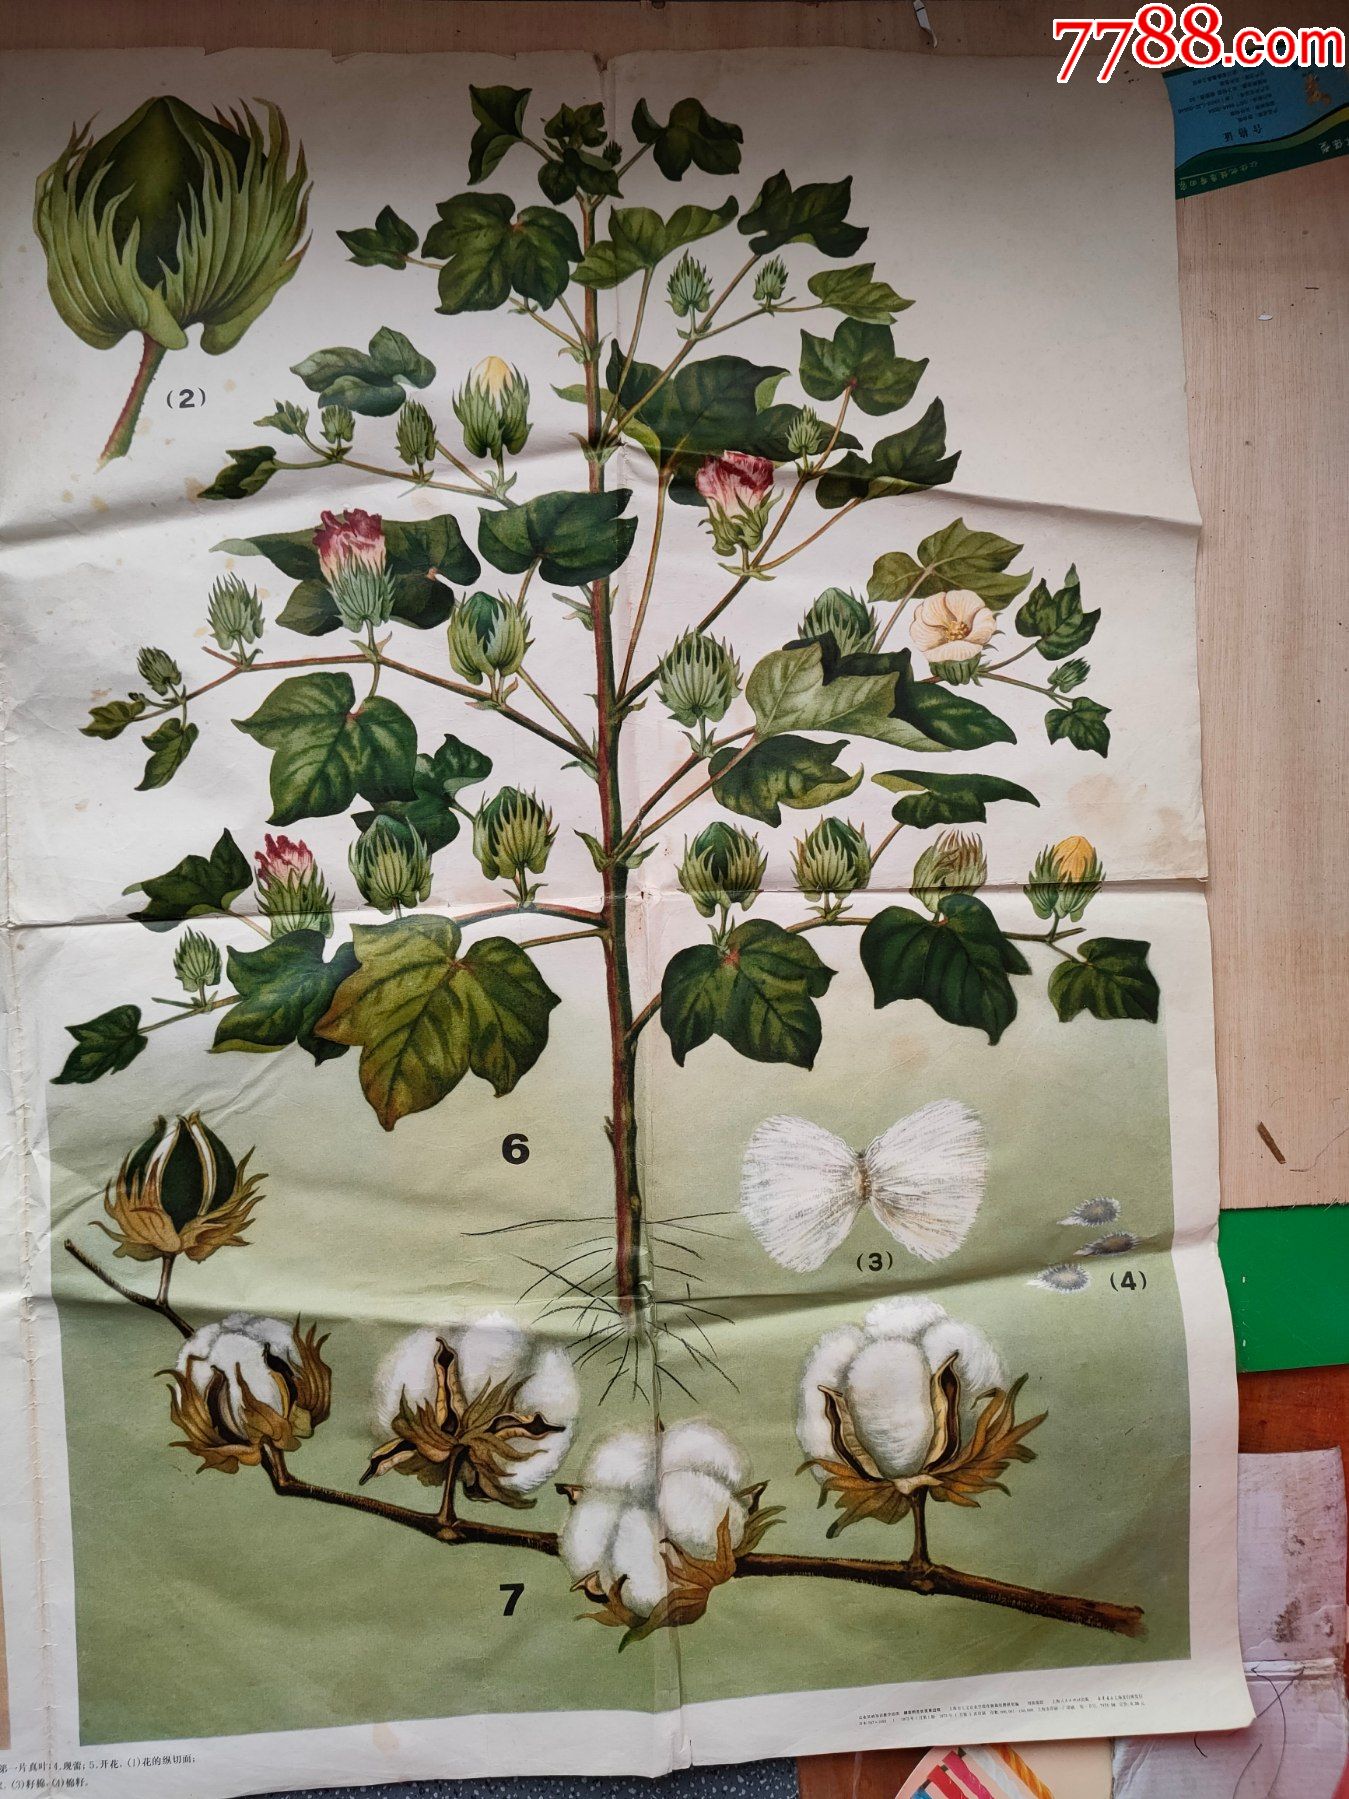 棉花的生长发育过程(印刷画约105cm*76cm)